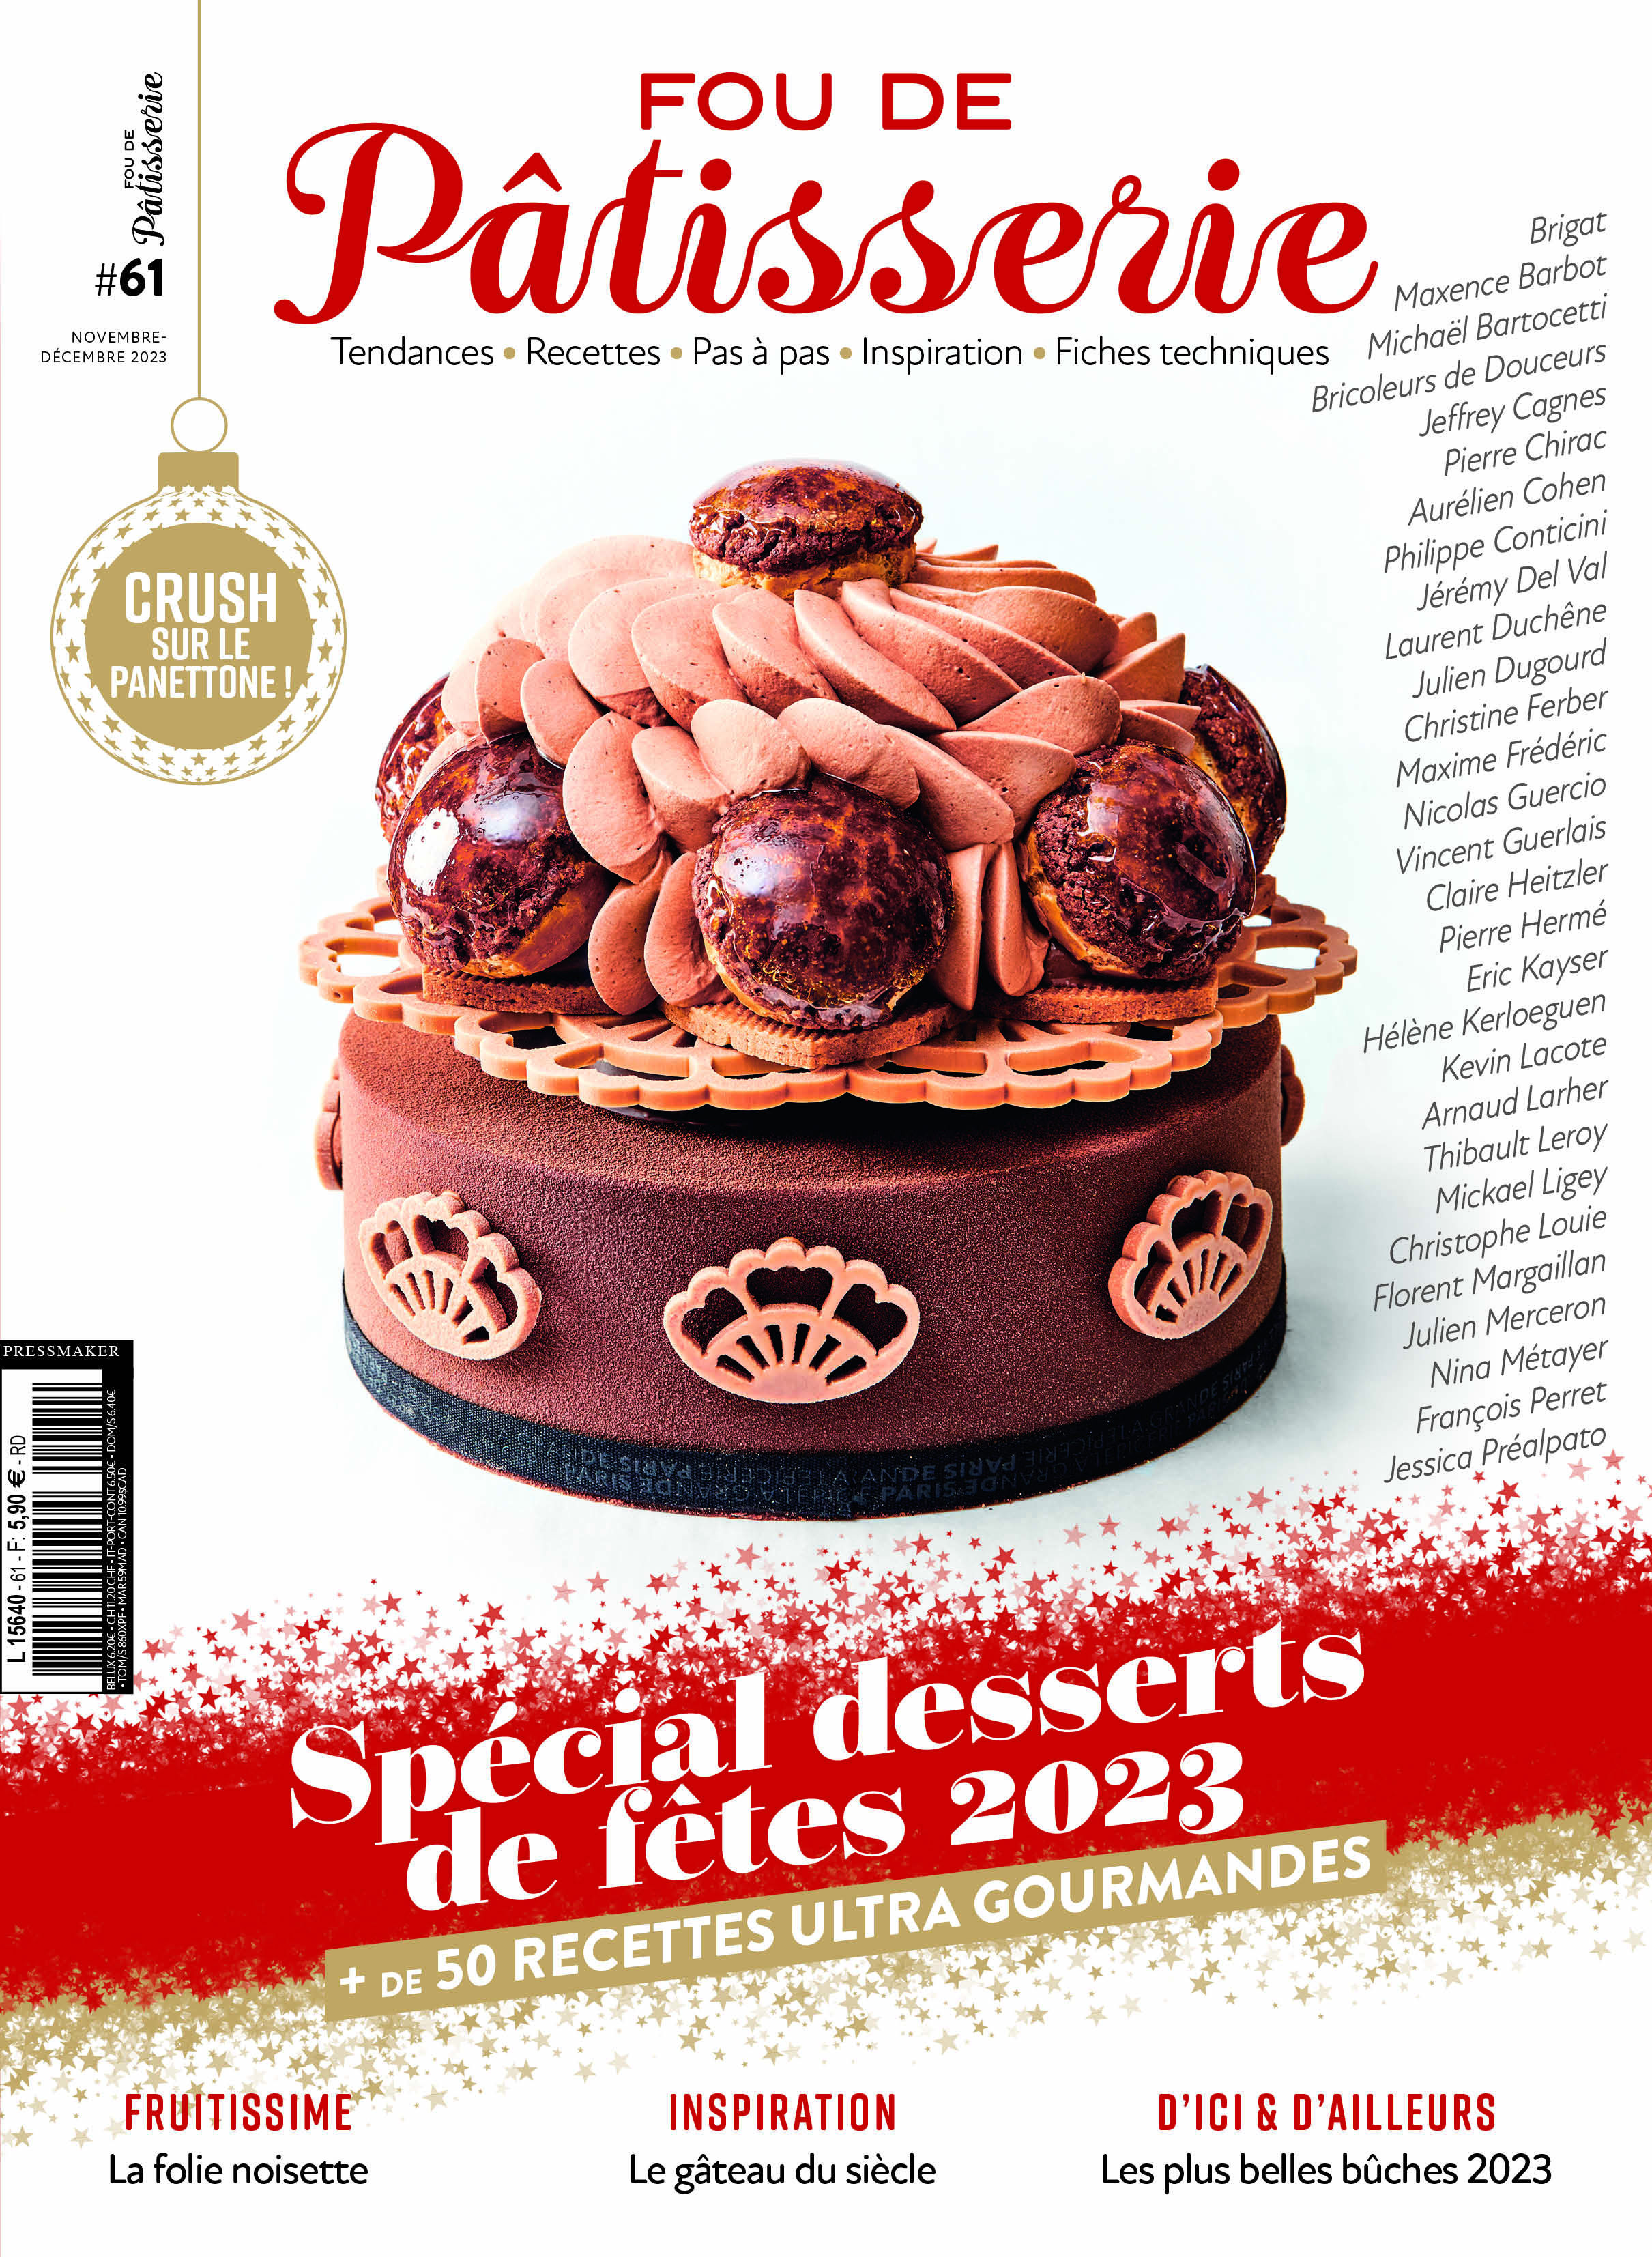 N°61 - Magazine Fou de pâtisserie